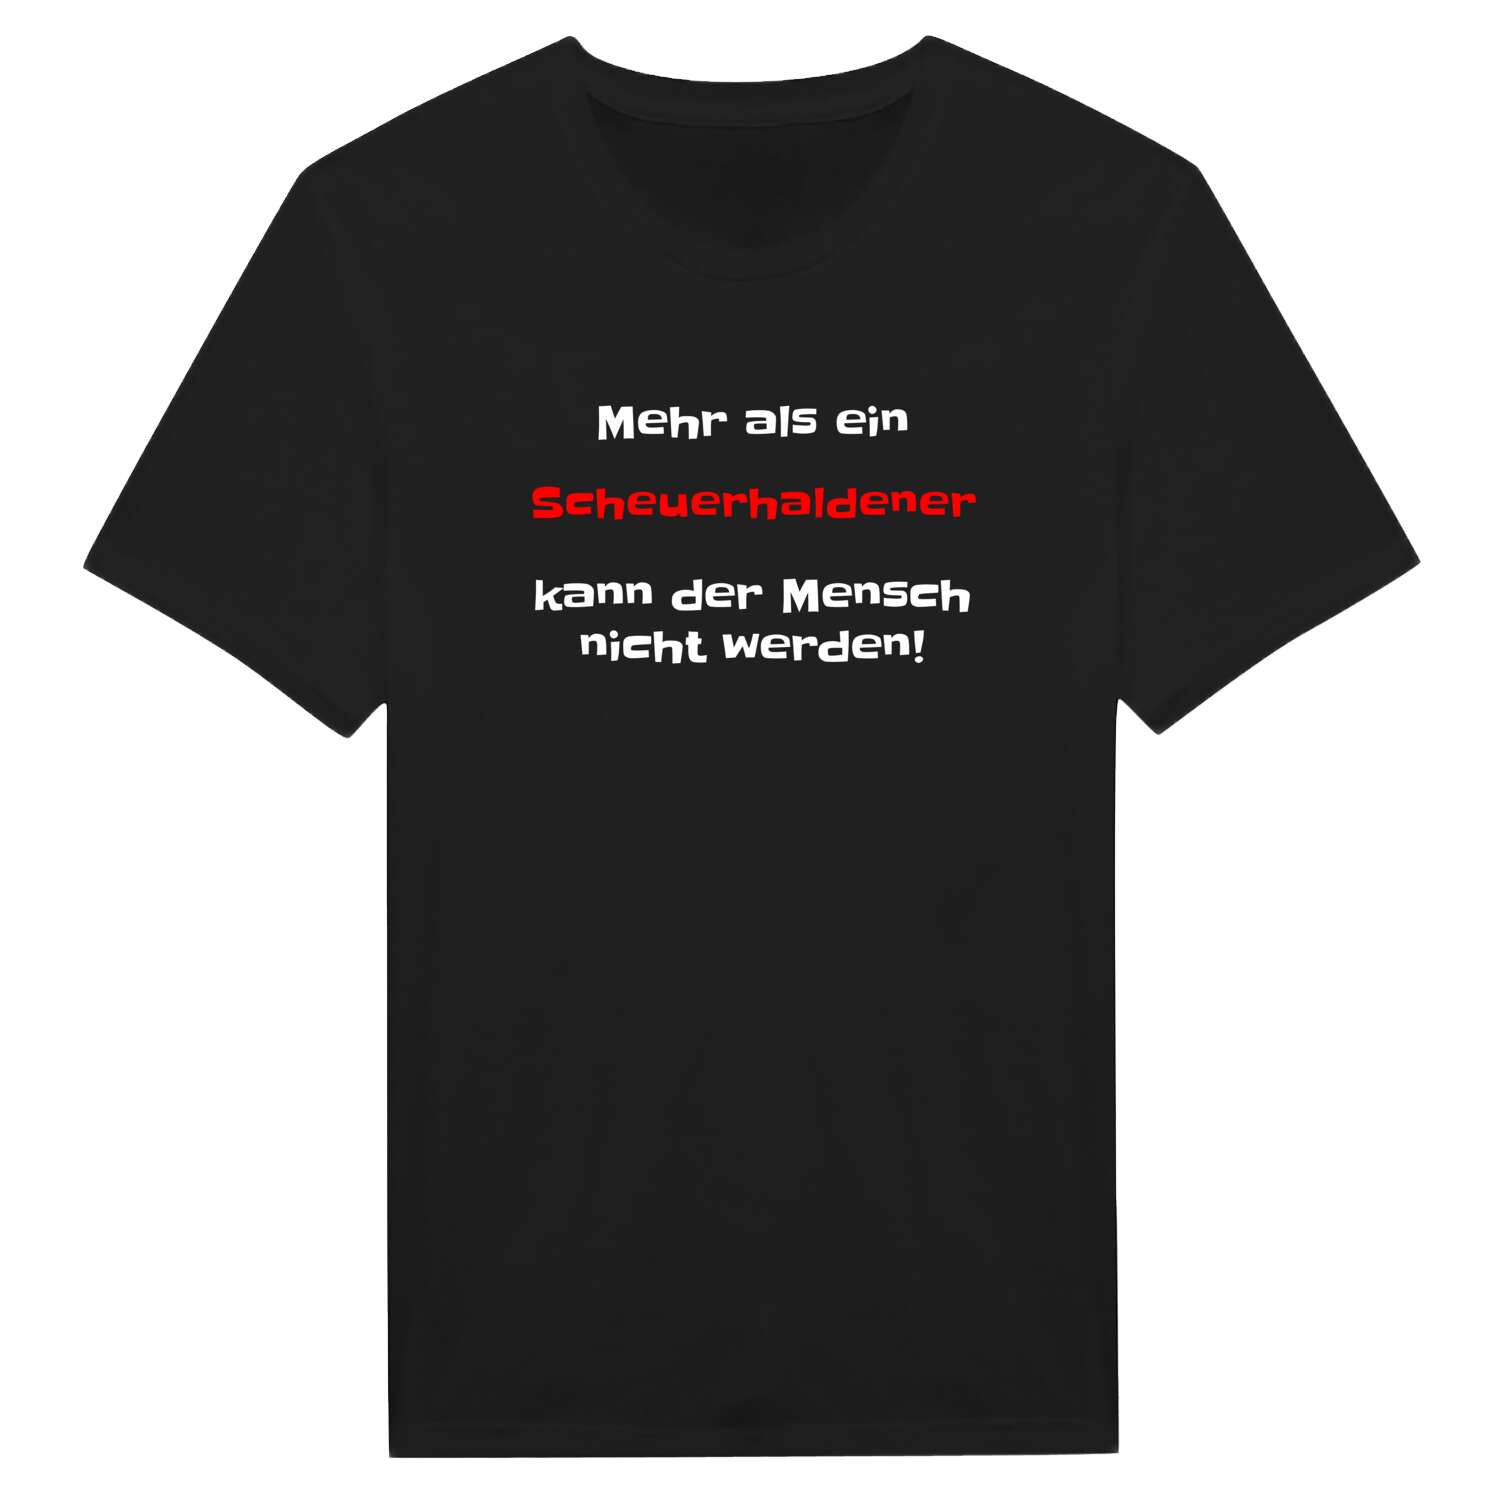 Scheuerhalden T-Shirt »Mehr als ein«